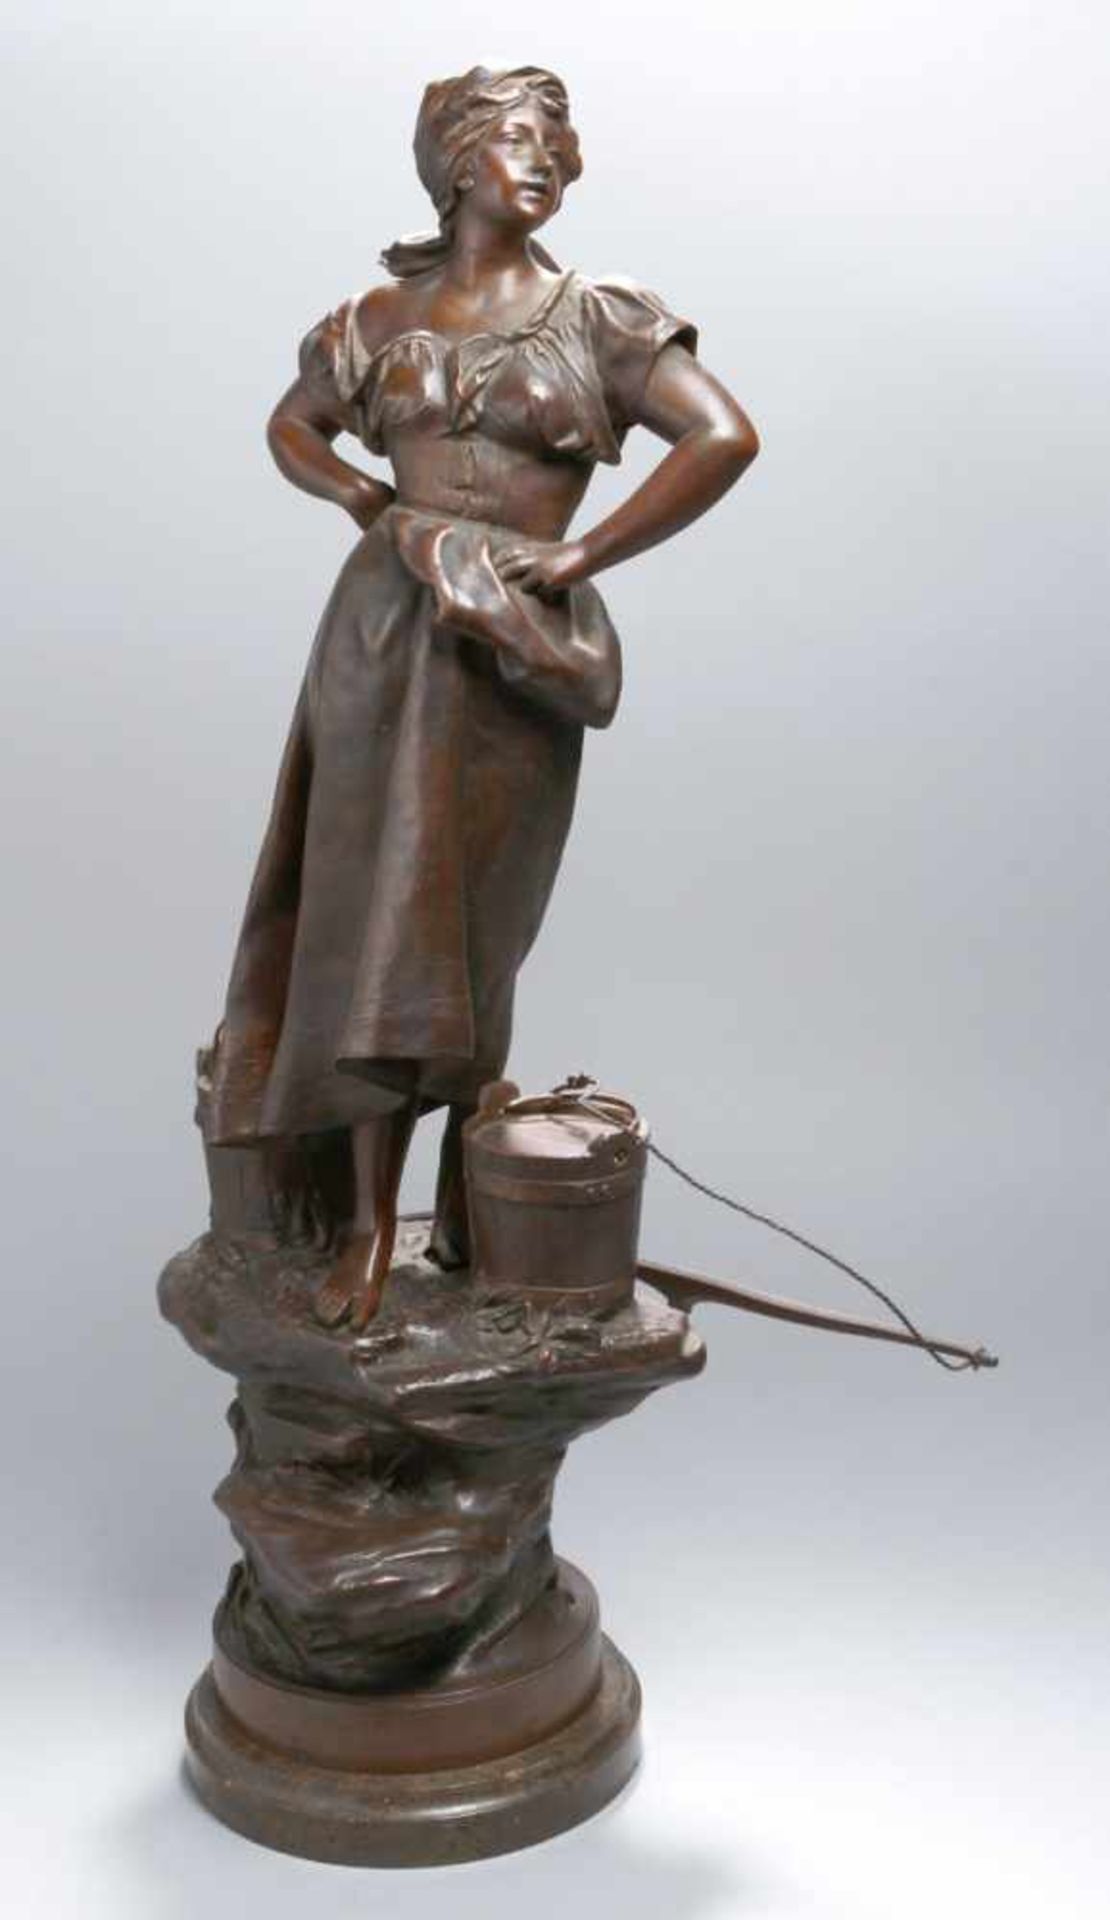 Weißbronze-Plastik, "Wasserträgerin", unleserlich signierender Bildhauer um 1900,vollplastische